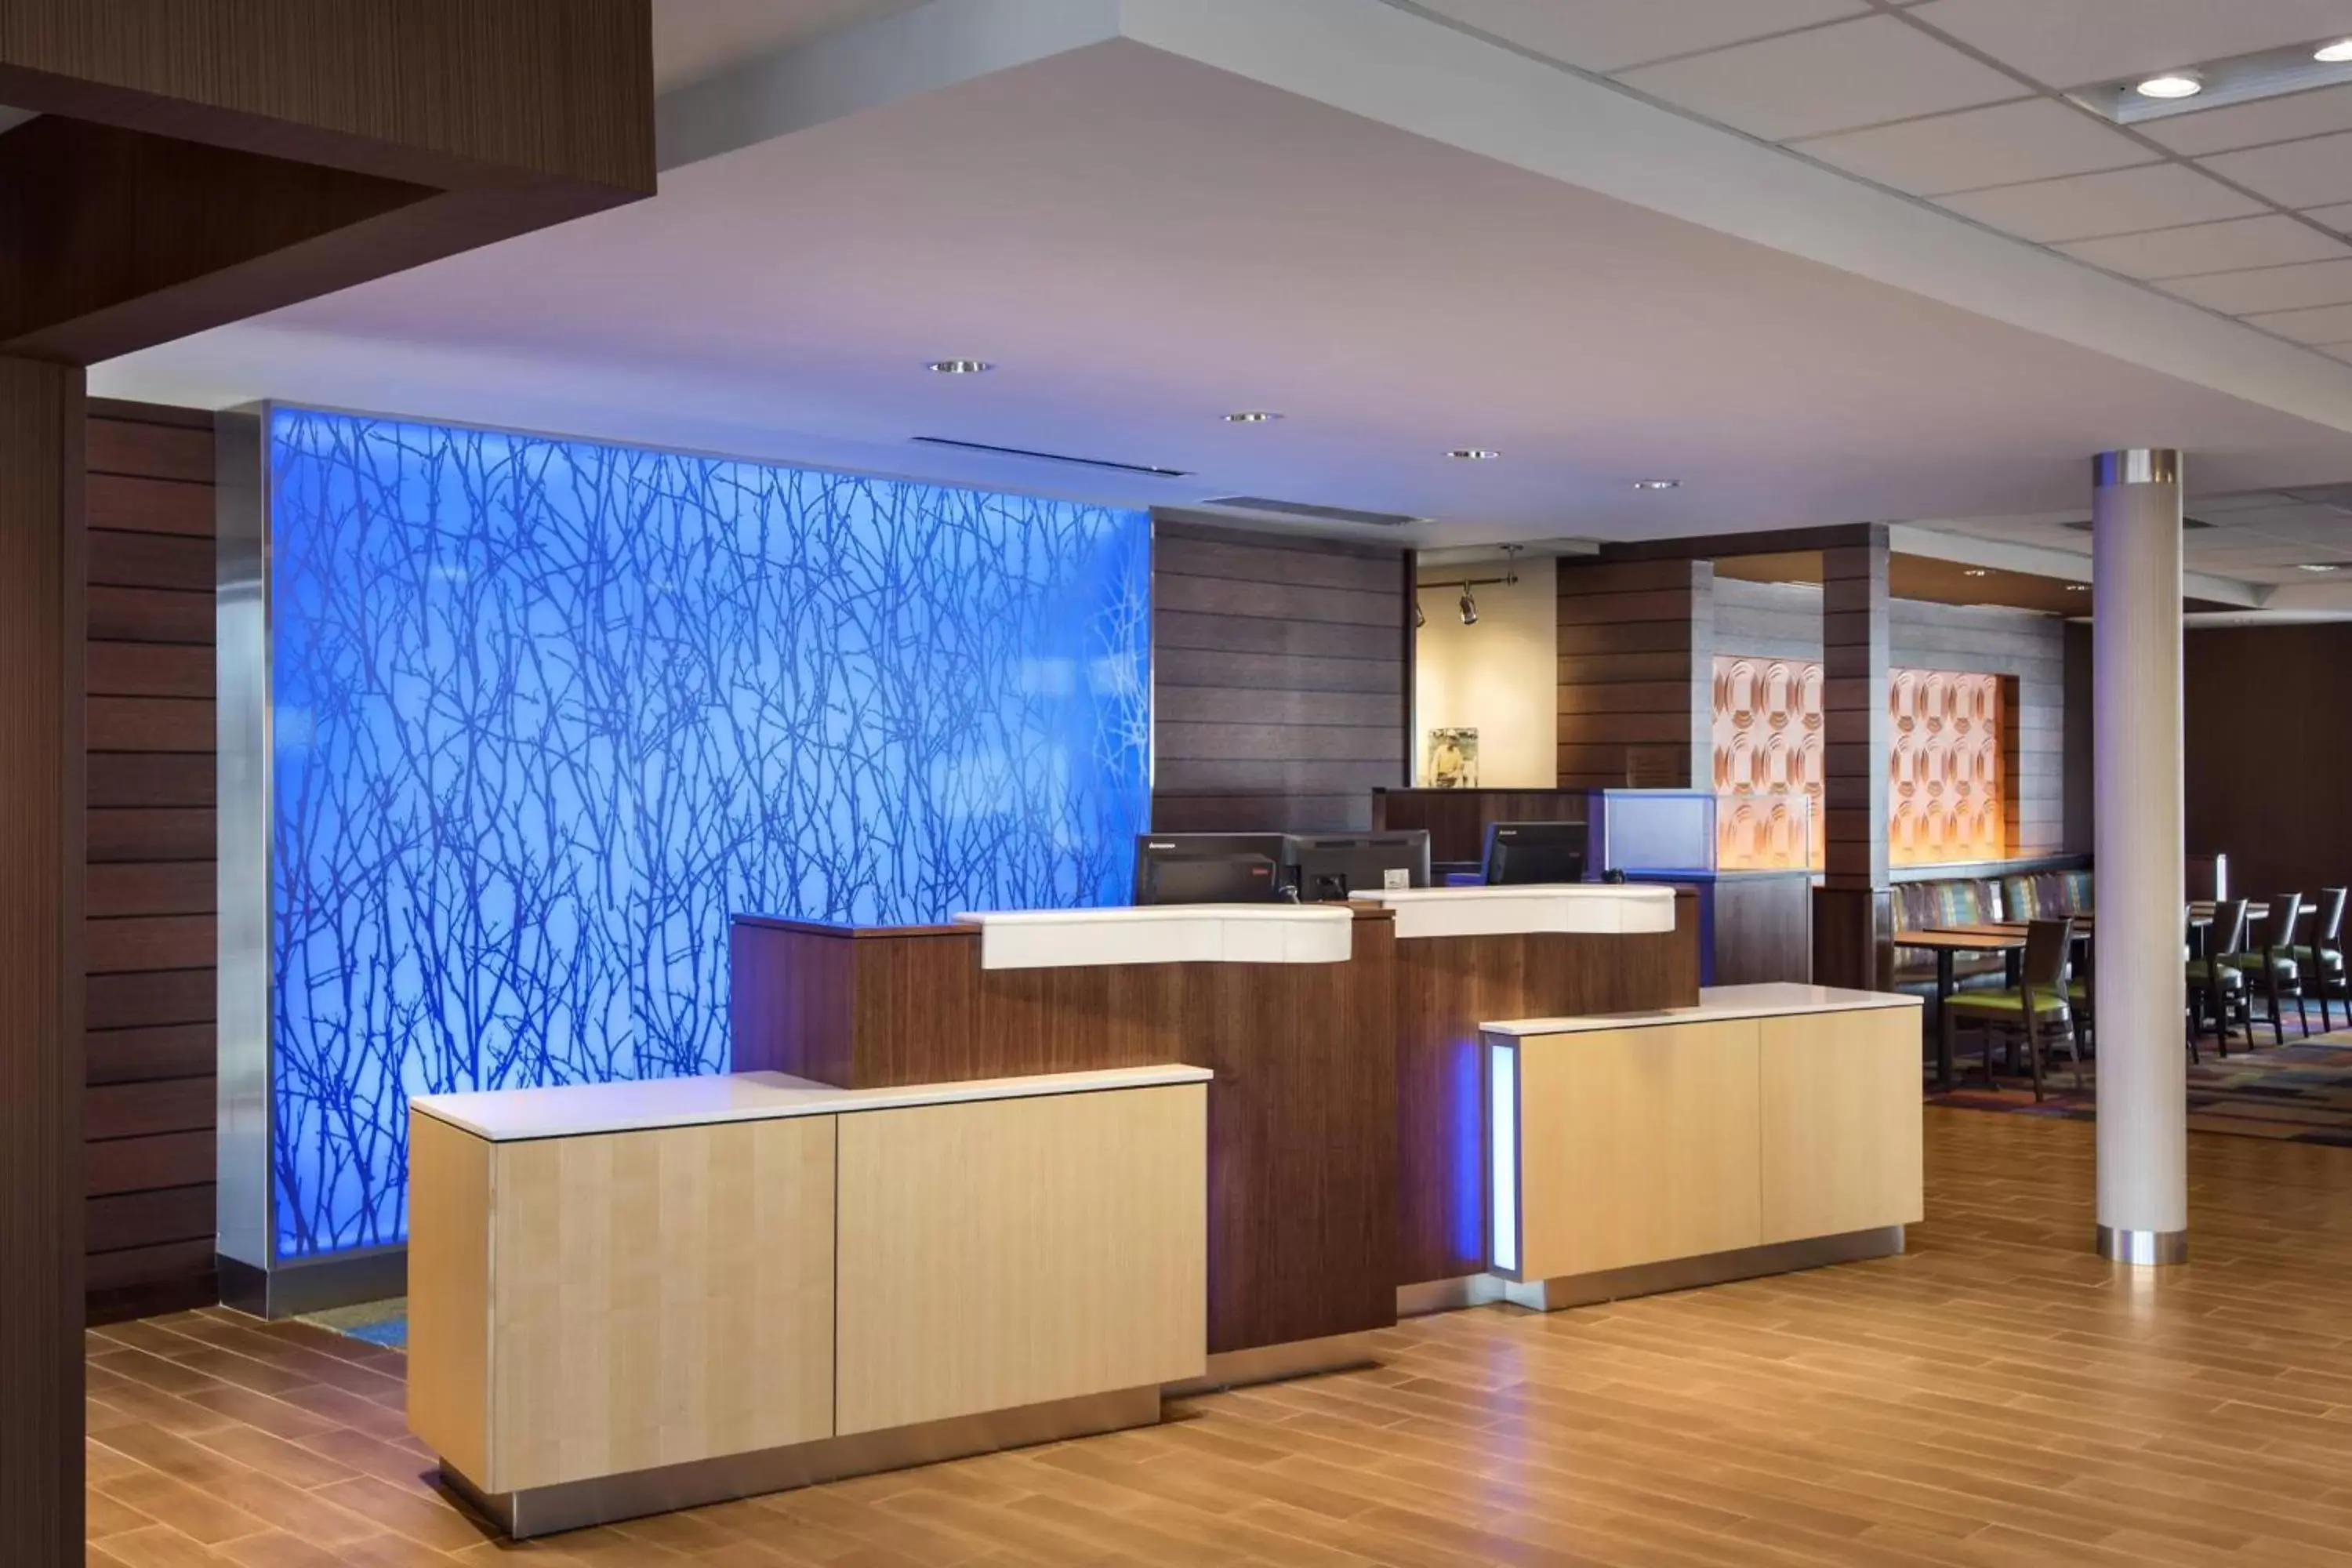 Lobby or reception, Lobby/Reception in Fairfield Inn & Suites by Marriott New Castle